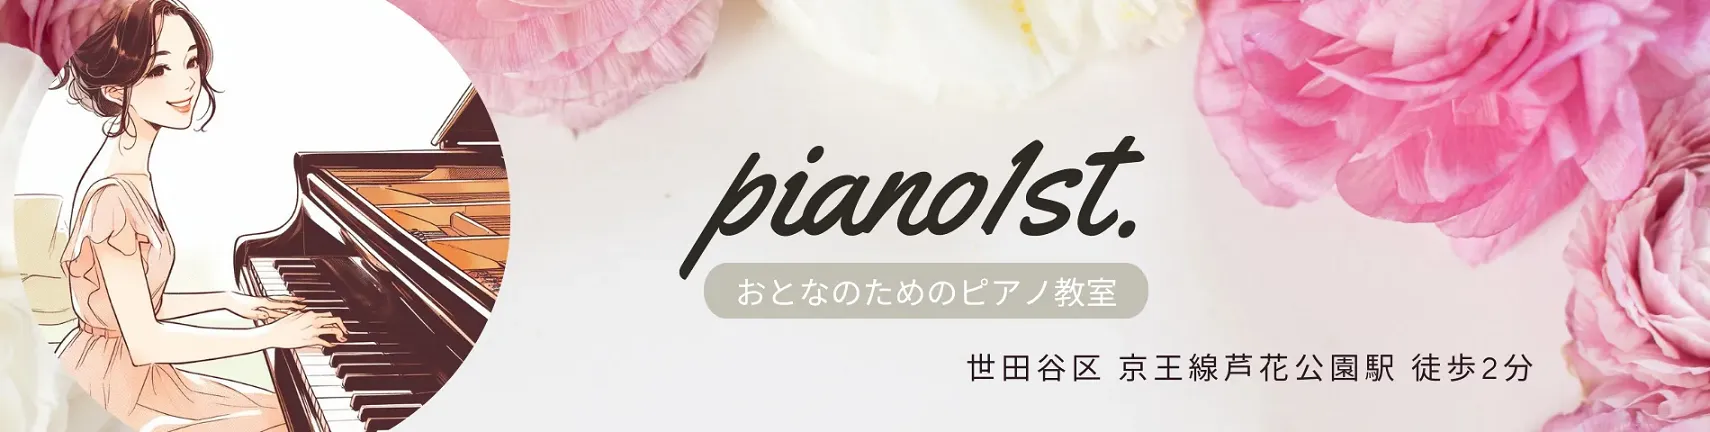 おとなピアノ教室1st. | 世田谷区 京王線芦花公園駅 徒歩2分